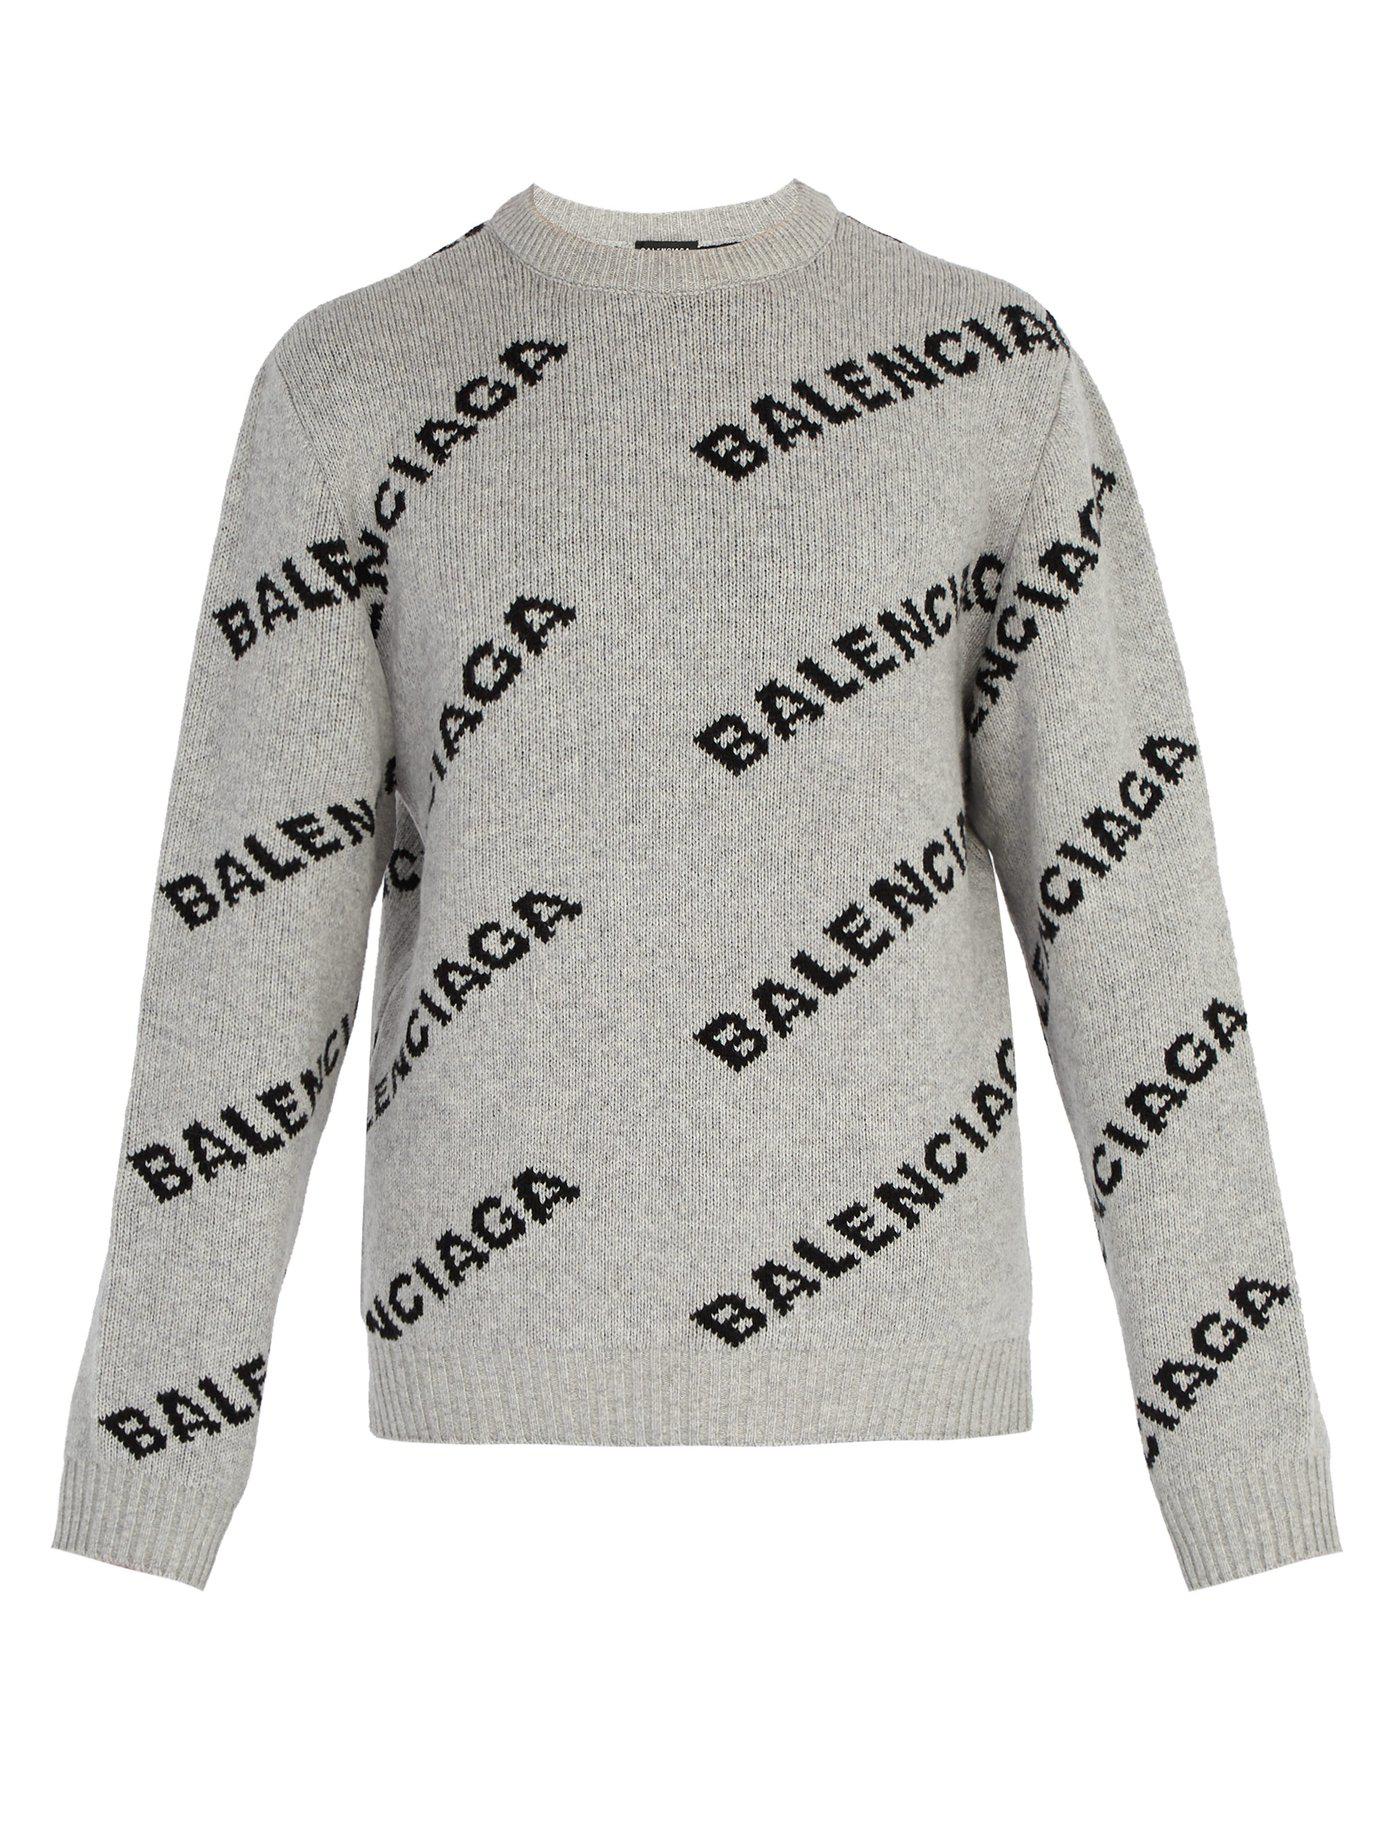 balenciaga gray sweater